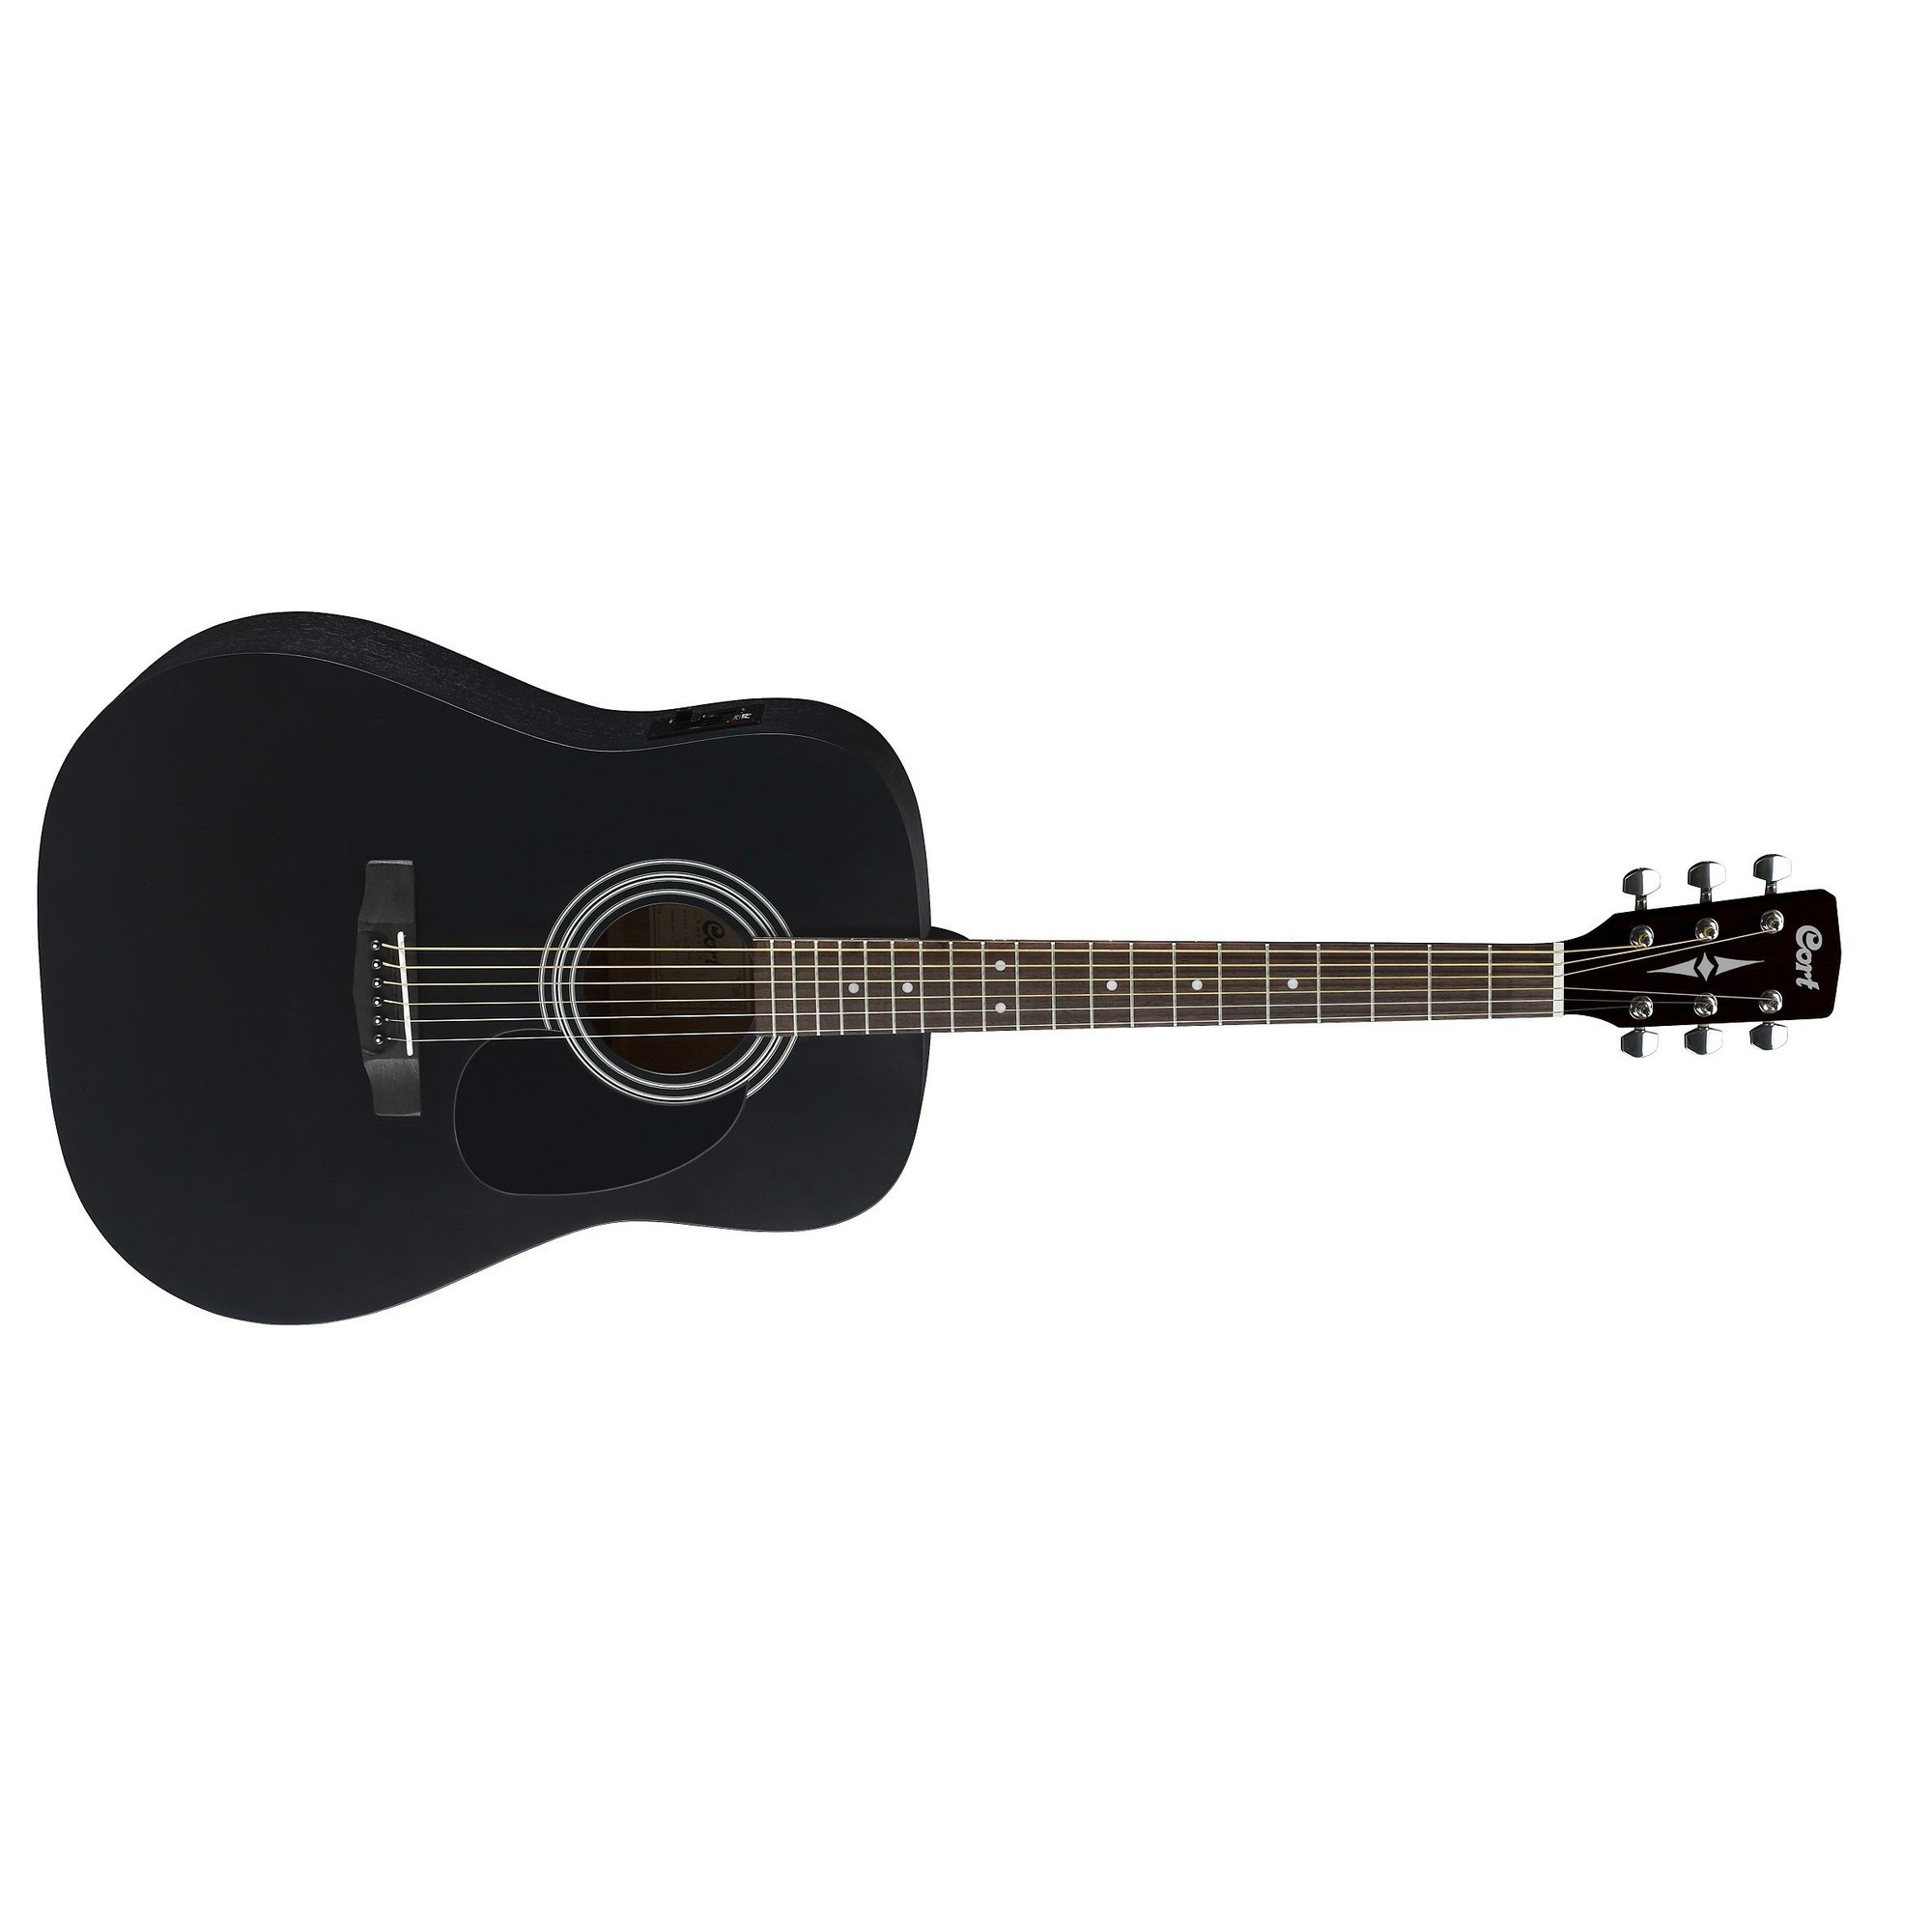 Гитара ямаха отзывы. Гитара Yamaha apx600 Black. Гитара f370 Yamaha. Fender Squier sa-105 Black акустическая гитара. Fender CD-60 BLK.